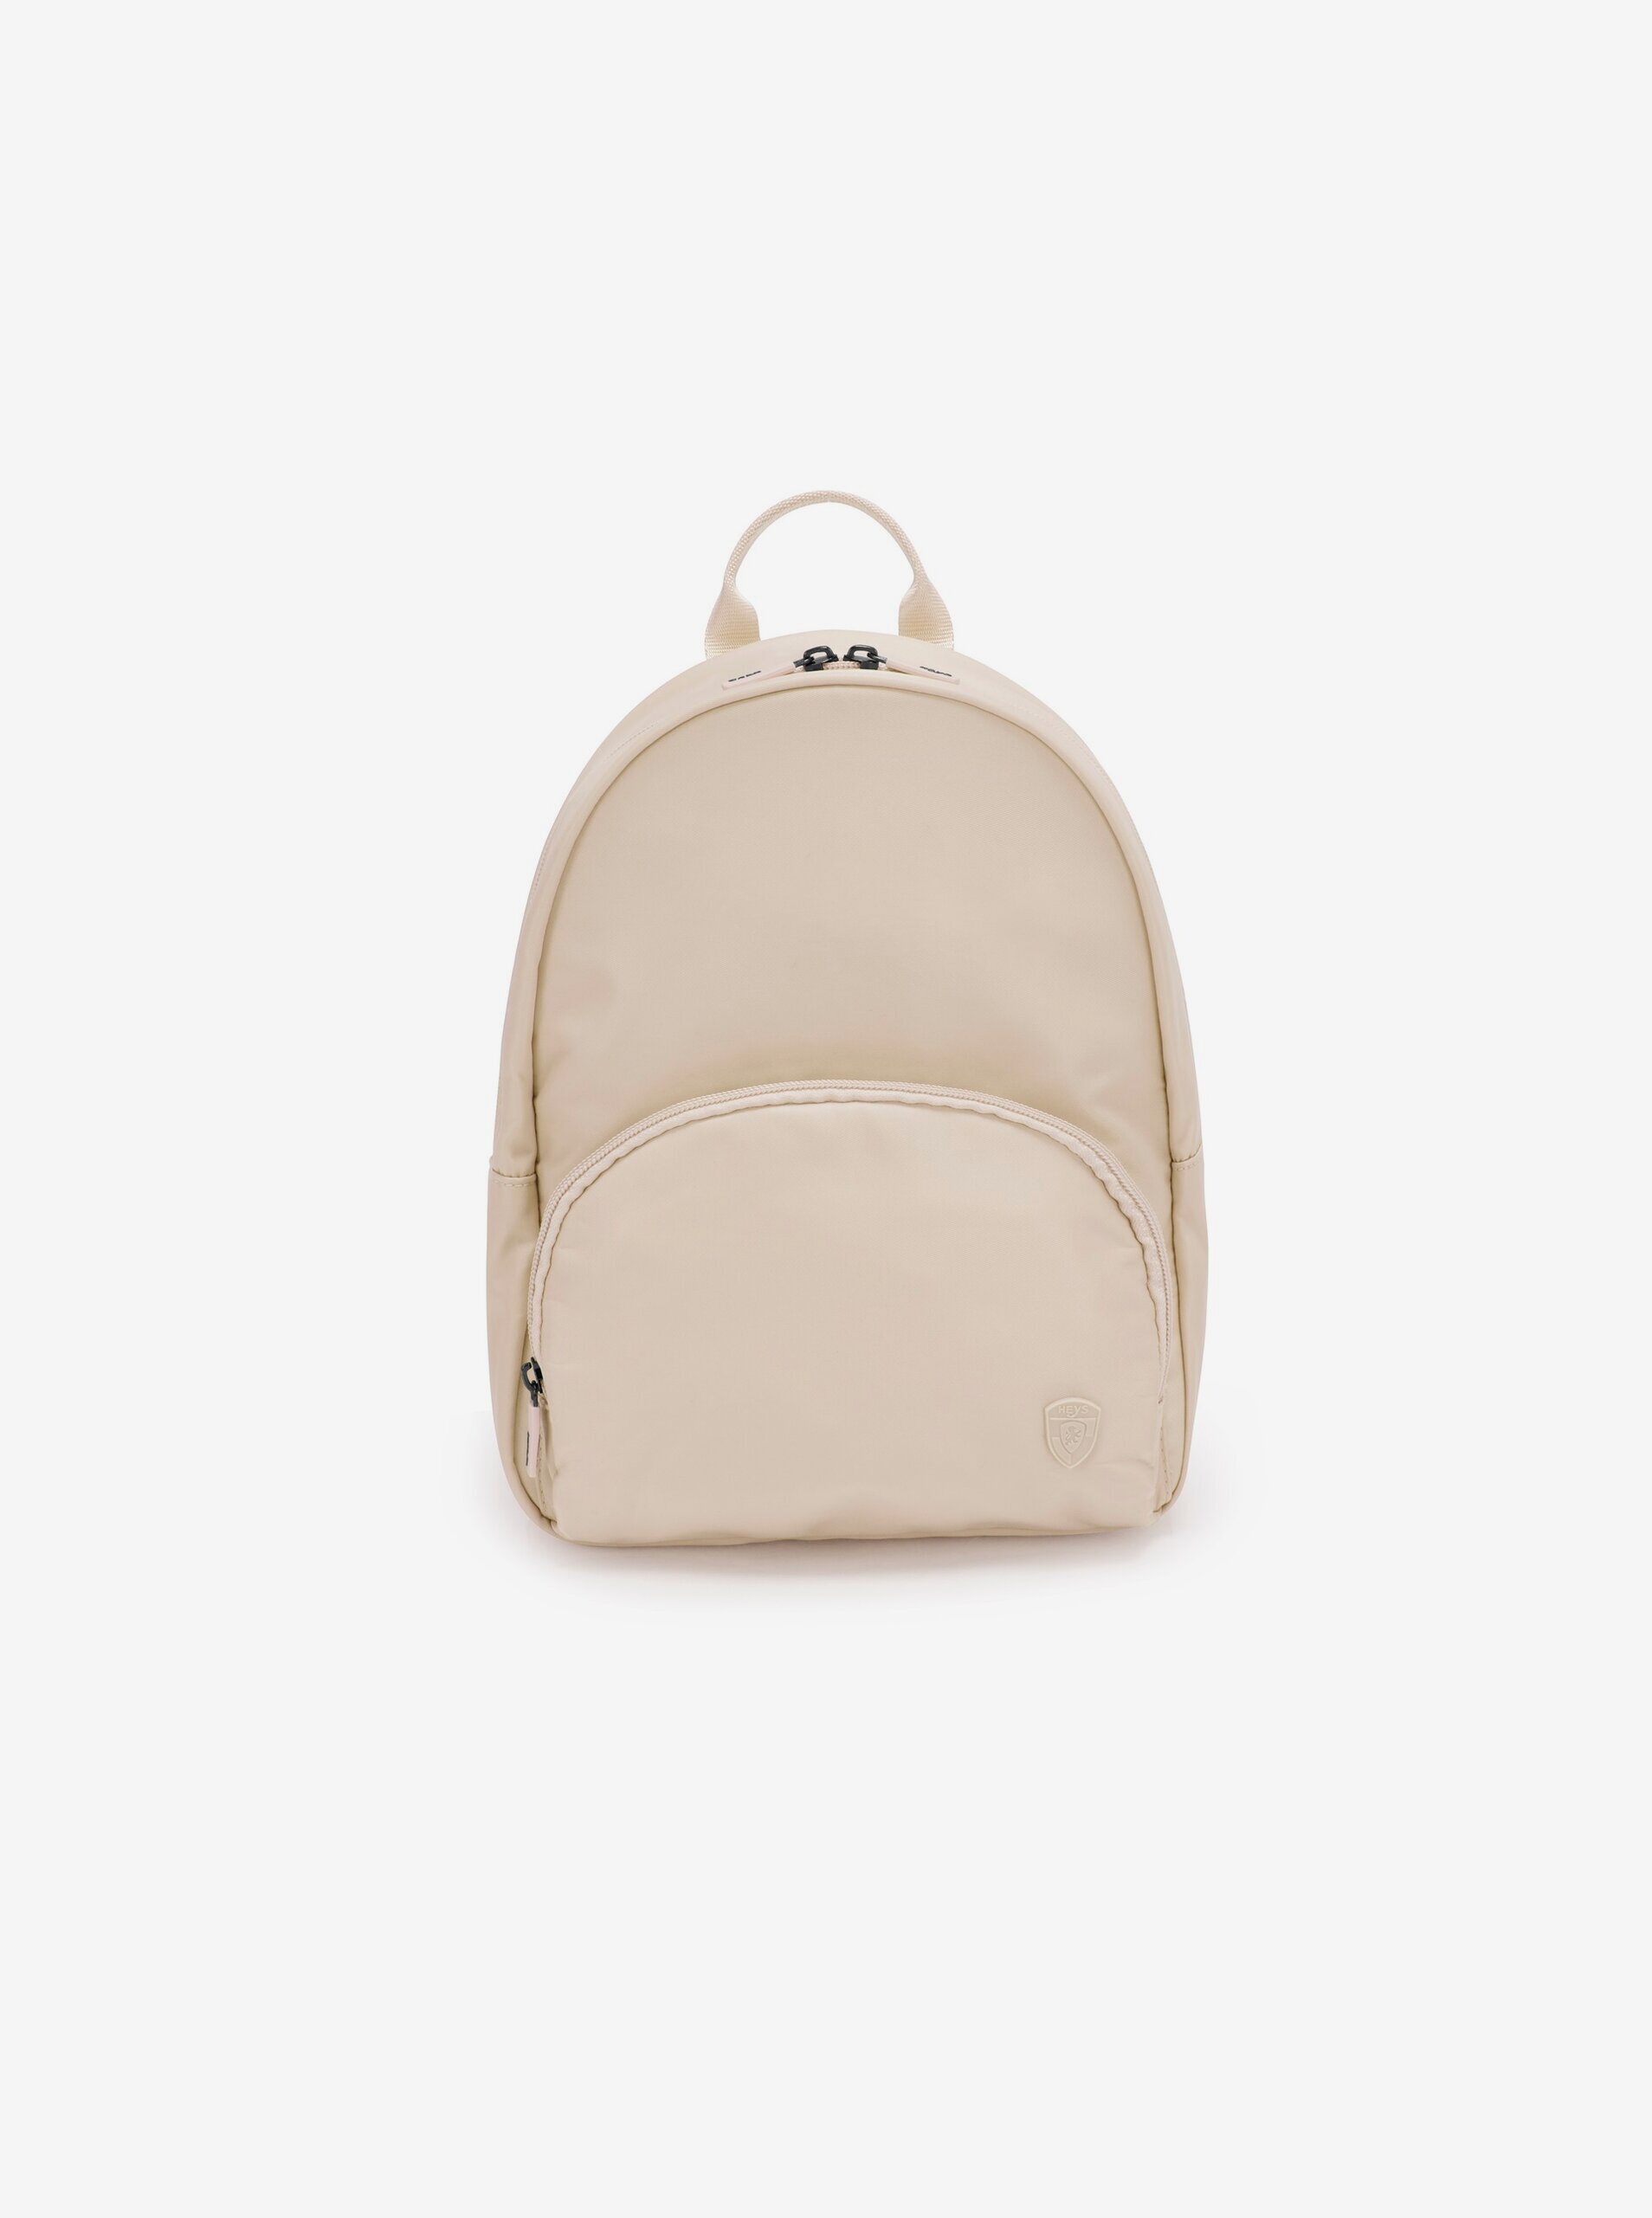 E-shop Béžový dámský batoh Heys Basic Backpack Tan